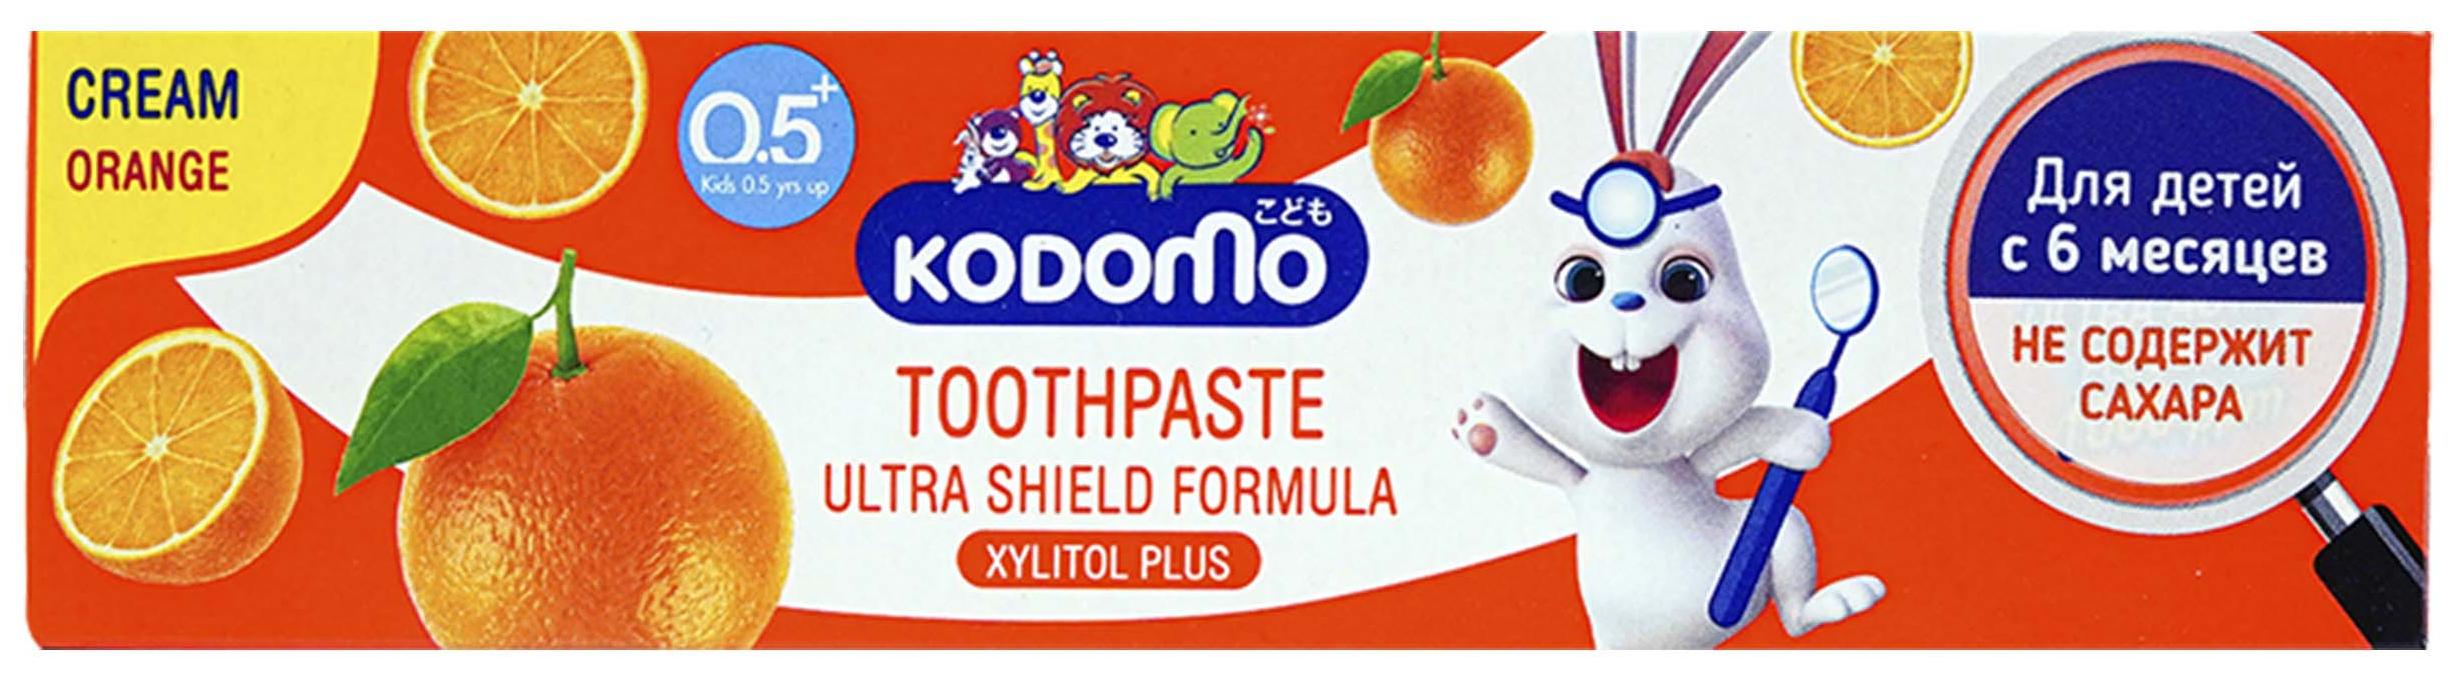 Lion Kodomo Деткая зубная паста от 6 месяцев Апельсин 80 гр